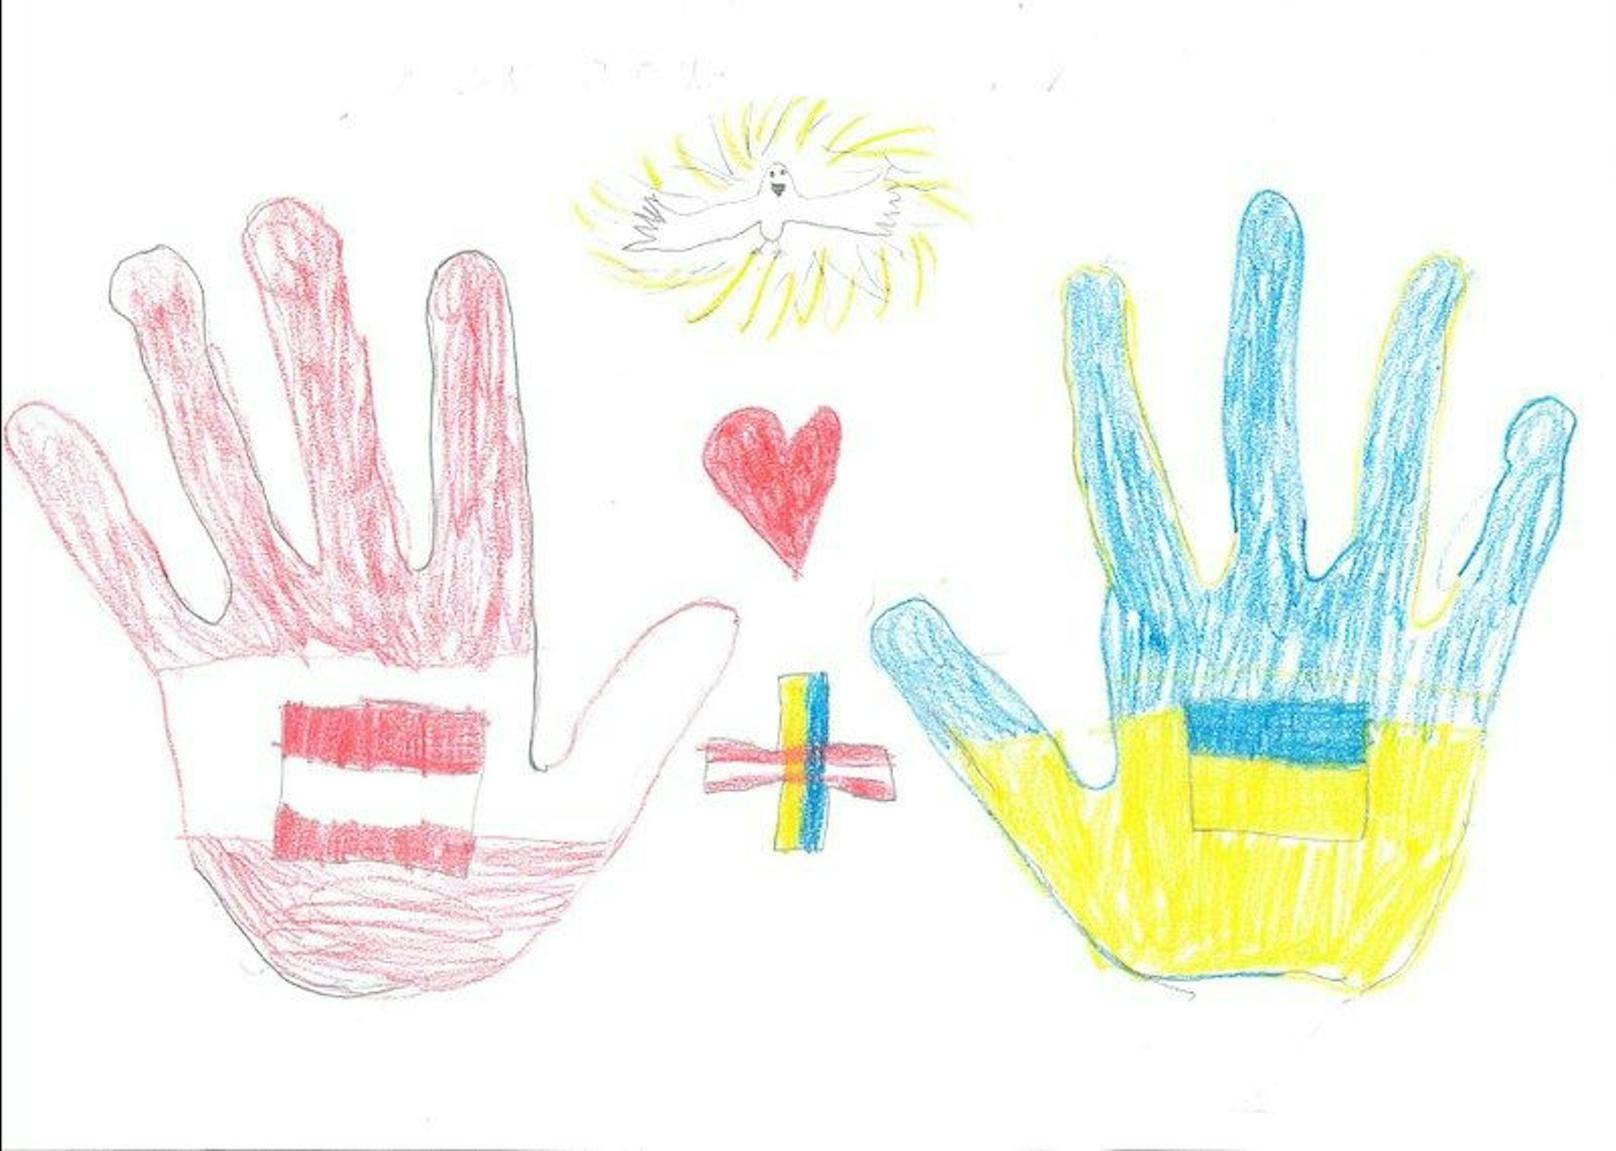 Schulen malen für ukrainische Kinder auf der Flucht